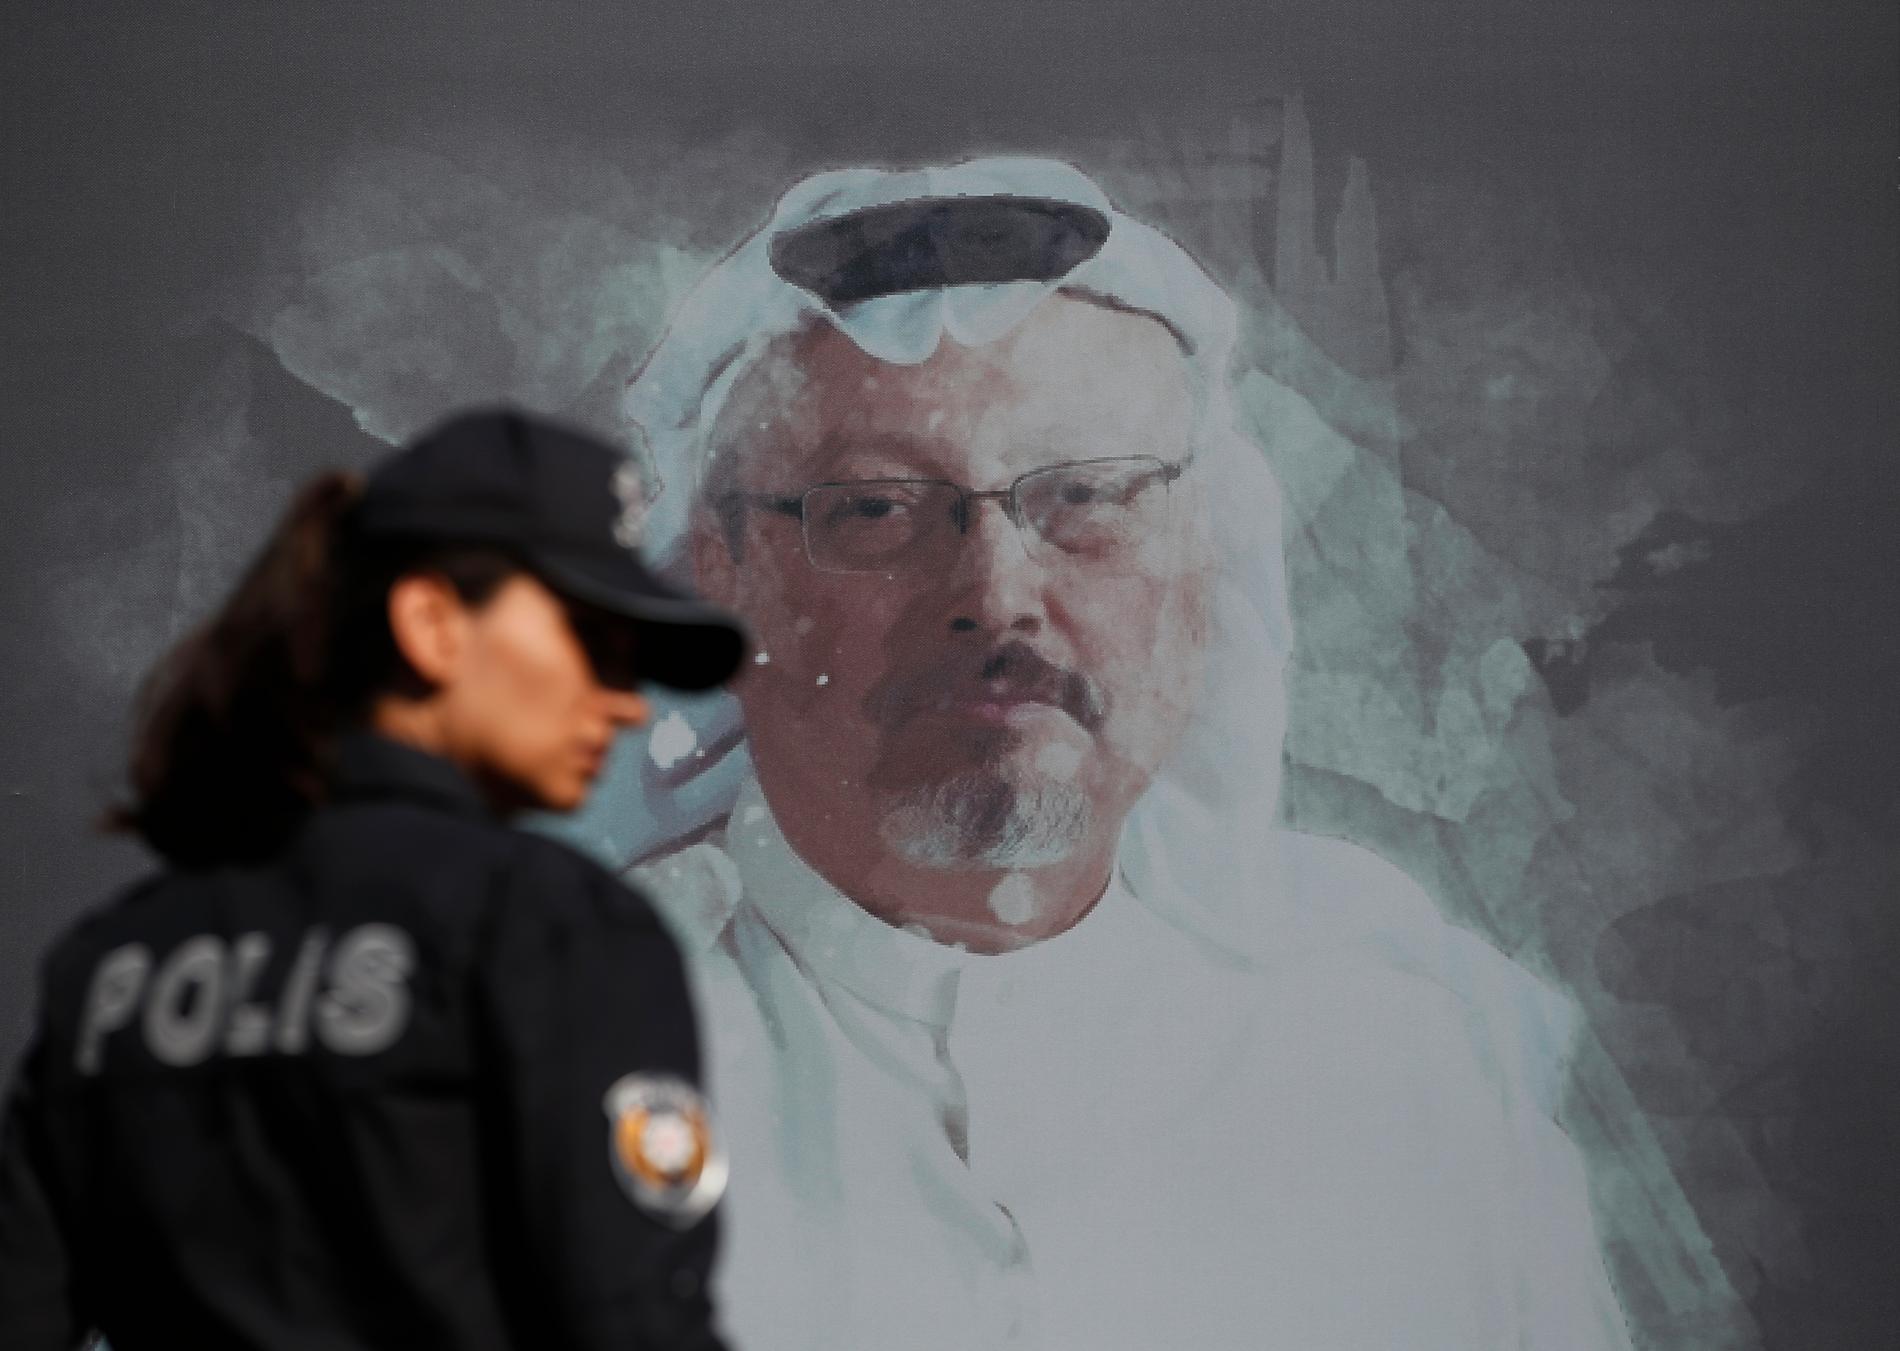 Jamal Khashoggi mördades inne på det saudiska konsulatet i Istanbul i oktober förra året. Nu döms fem personer till döden och tre till långa fängelsestraff. Men domamrna möts av skarp kritik, då det anses att de ytterst ansvariga går fria. Arkivbild.